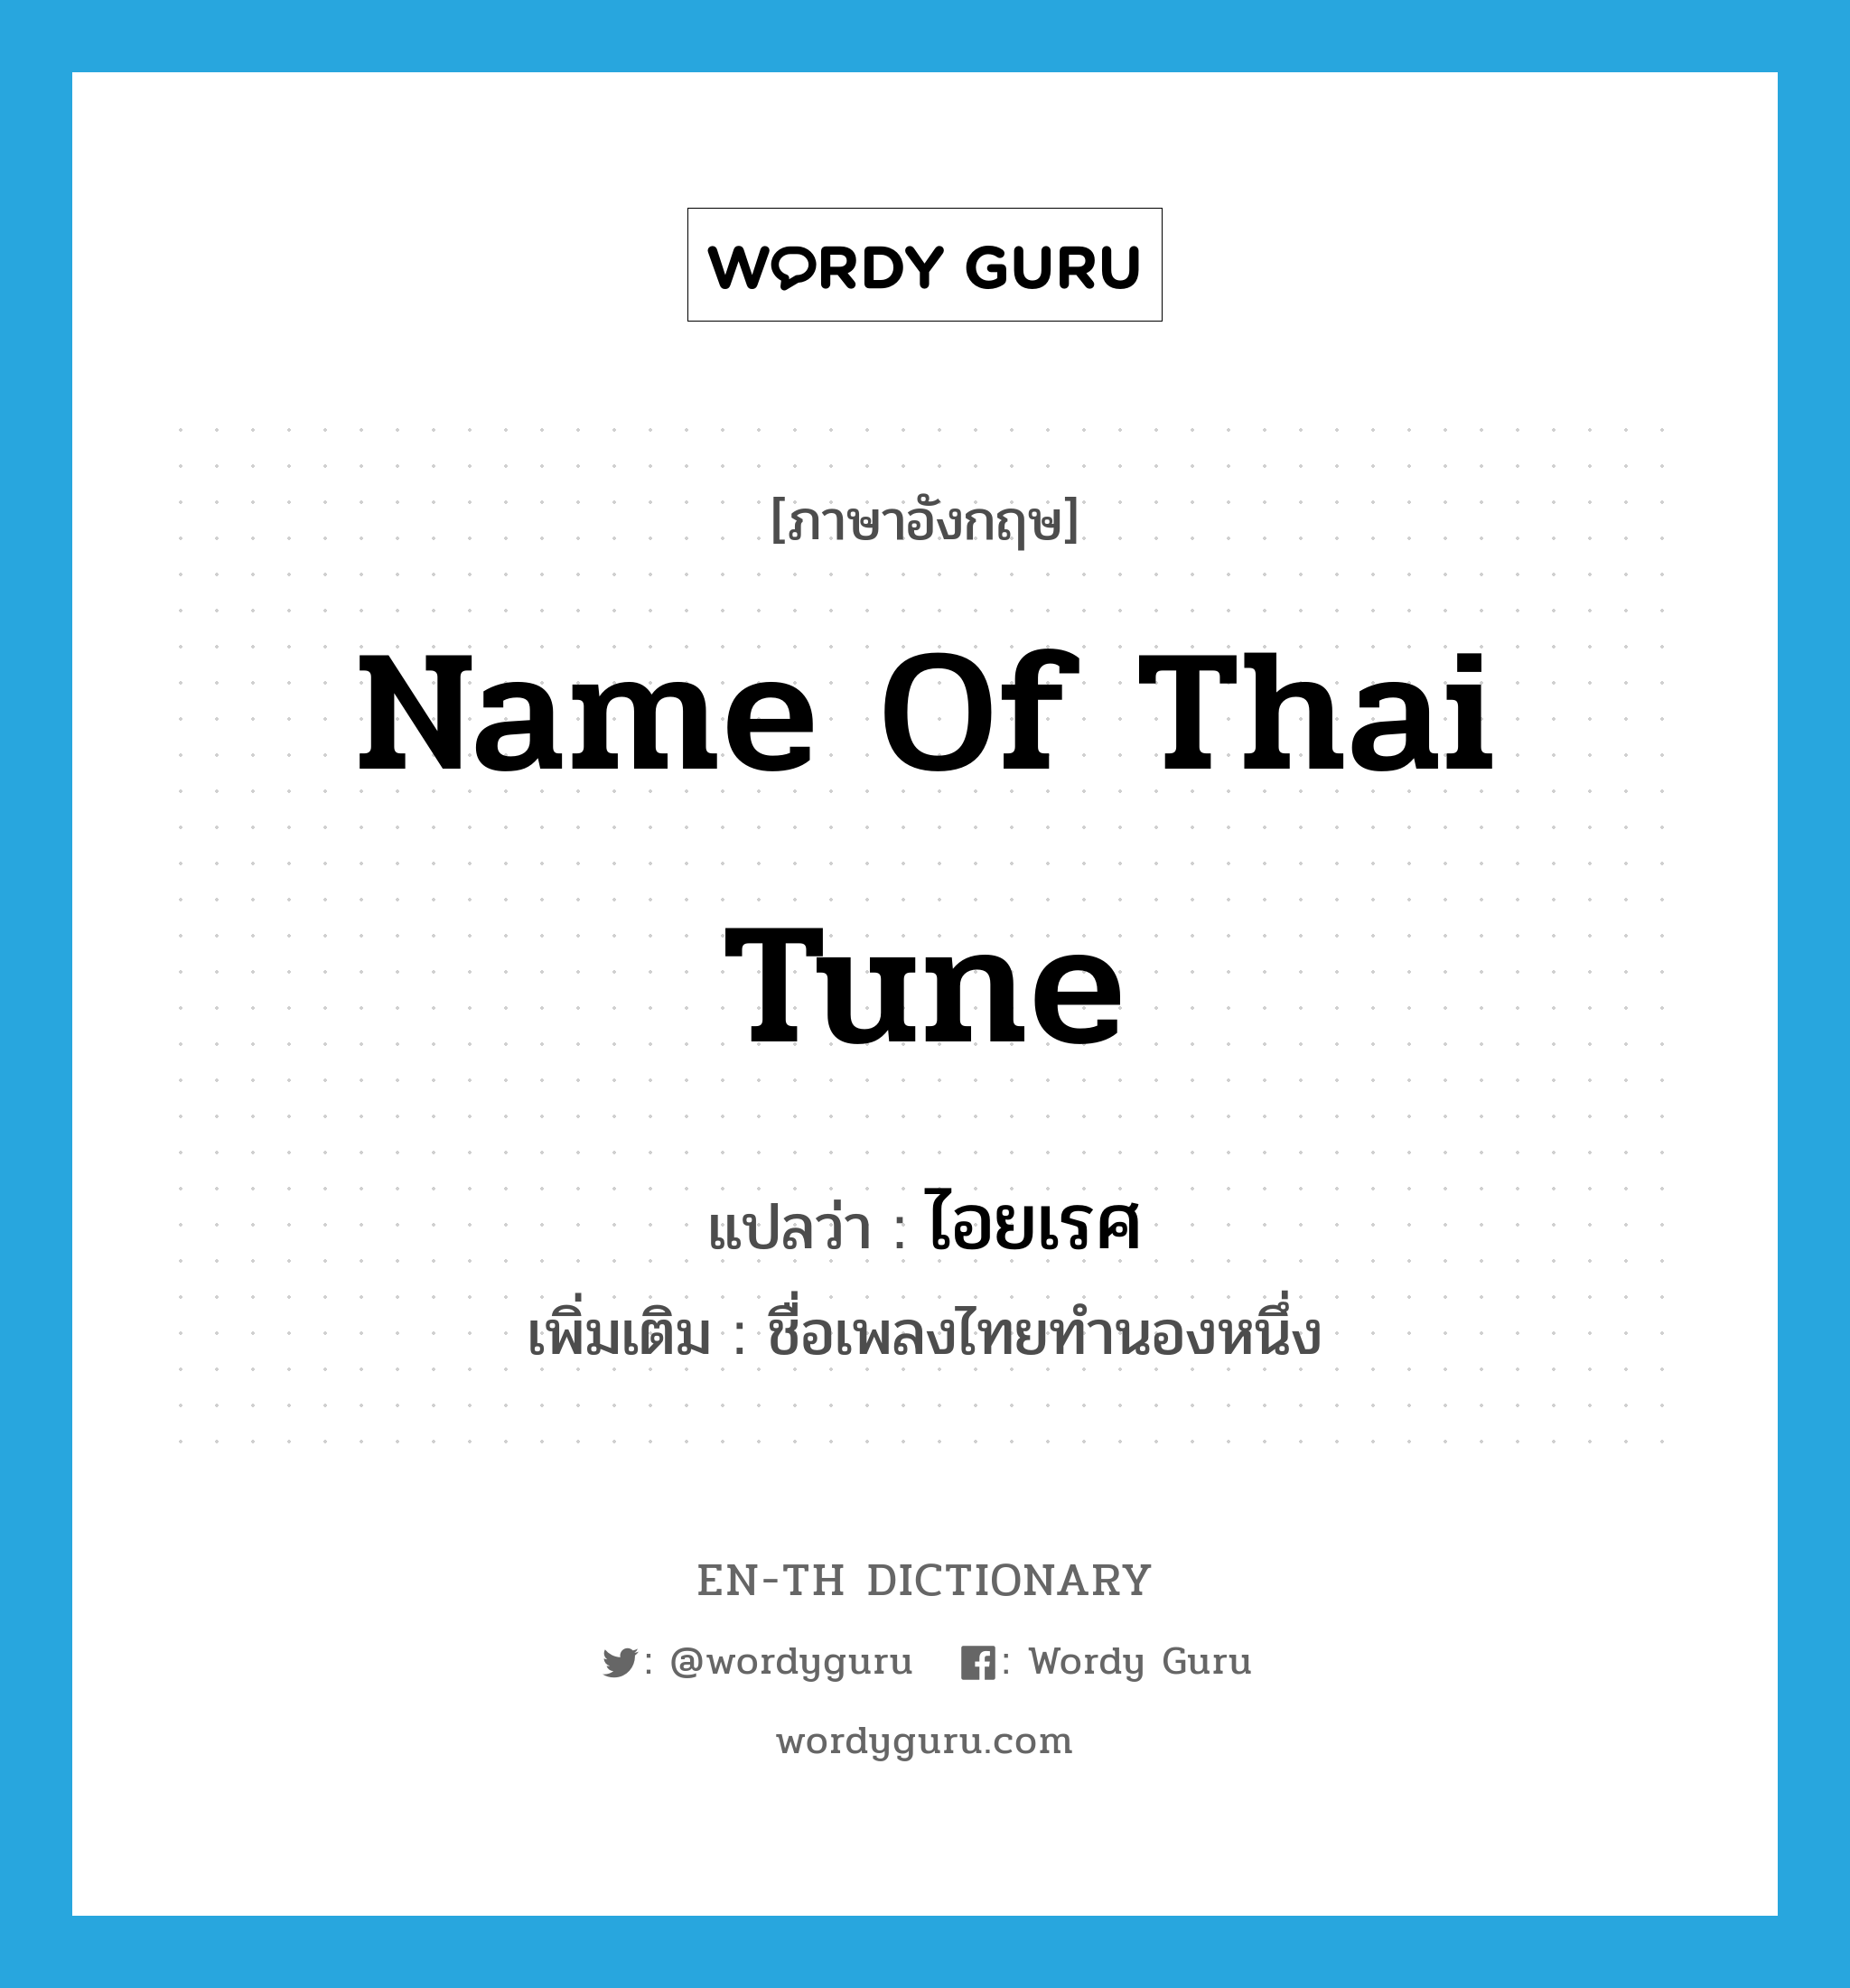 ไอยเรศ ภาษาอังกฤษ?, คำศัพท์ภาษาอังกฤษ ไอยเรศ แปลว่า name of Thai tune ประเภท N เพิ่มเติม ชื่อเพลงไทยทำนองหนึ่ง หมวด N